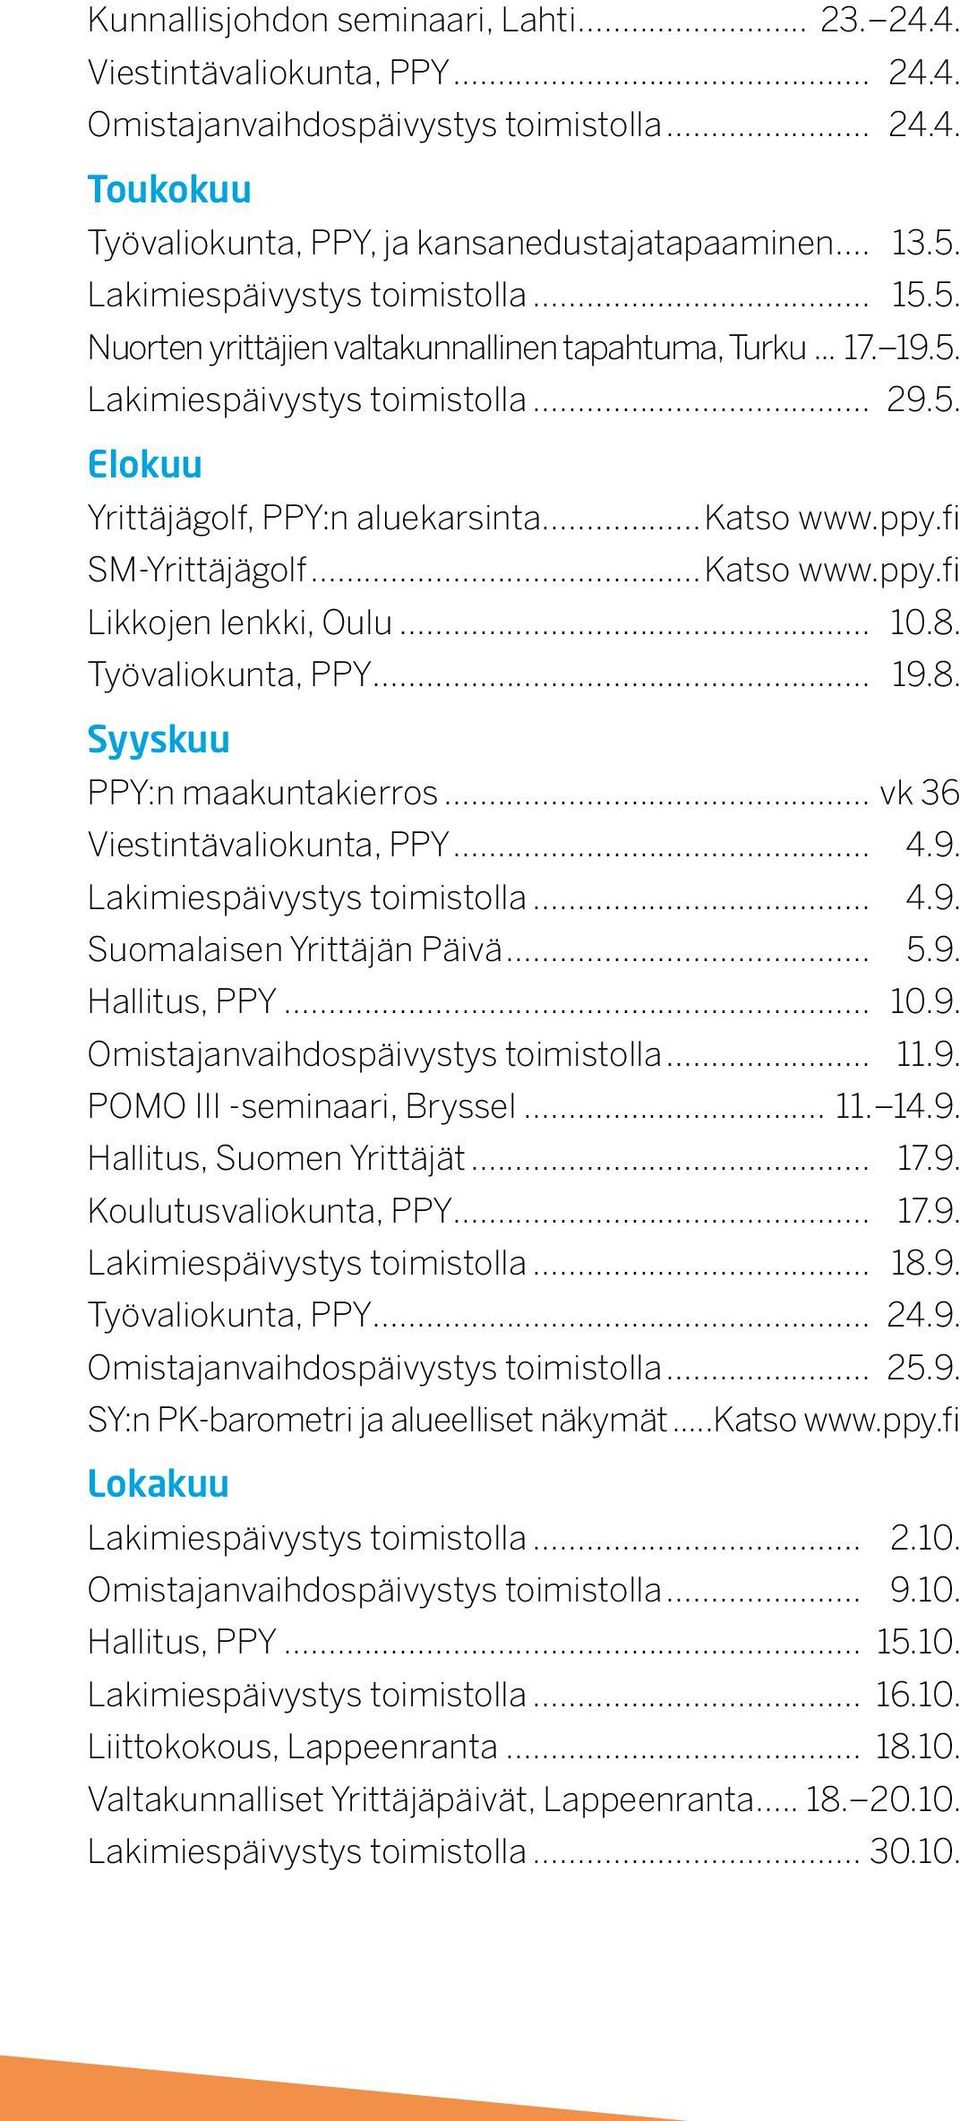 fi SM-Yrittäjägolf...Katso www.ppy.fi Likkojen lenkki, Oulu... 10.8. Työvaliokunta, PPY... 19.8. Syyskuu PPY:n maakuntakierros... vk 36 Viestintävaliokunta, PPY... 4.9. Lakimiespäivystys toimistolla.